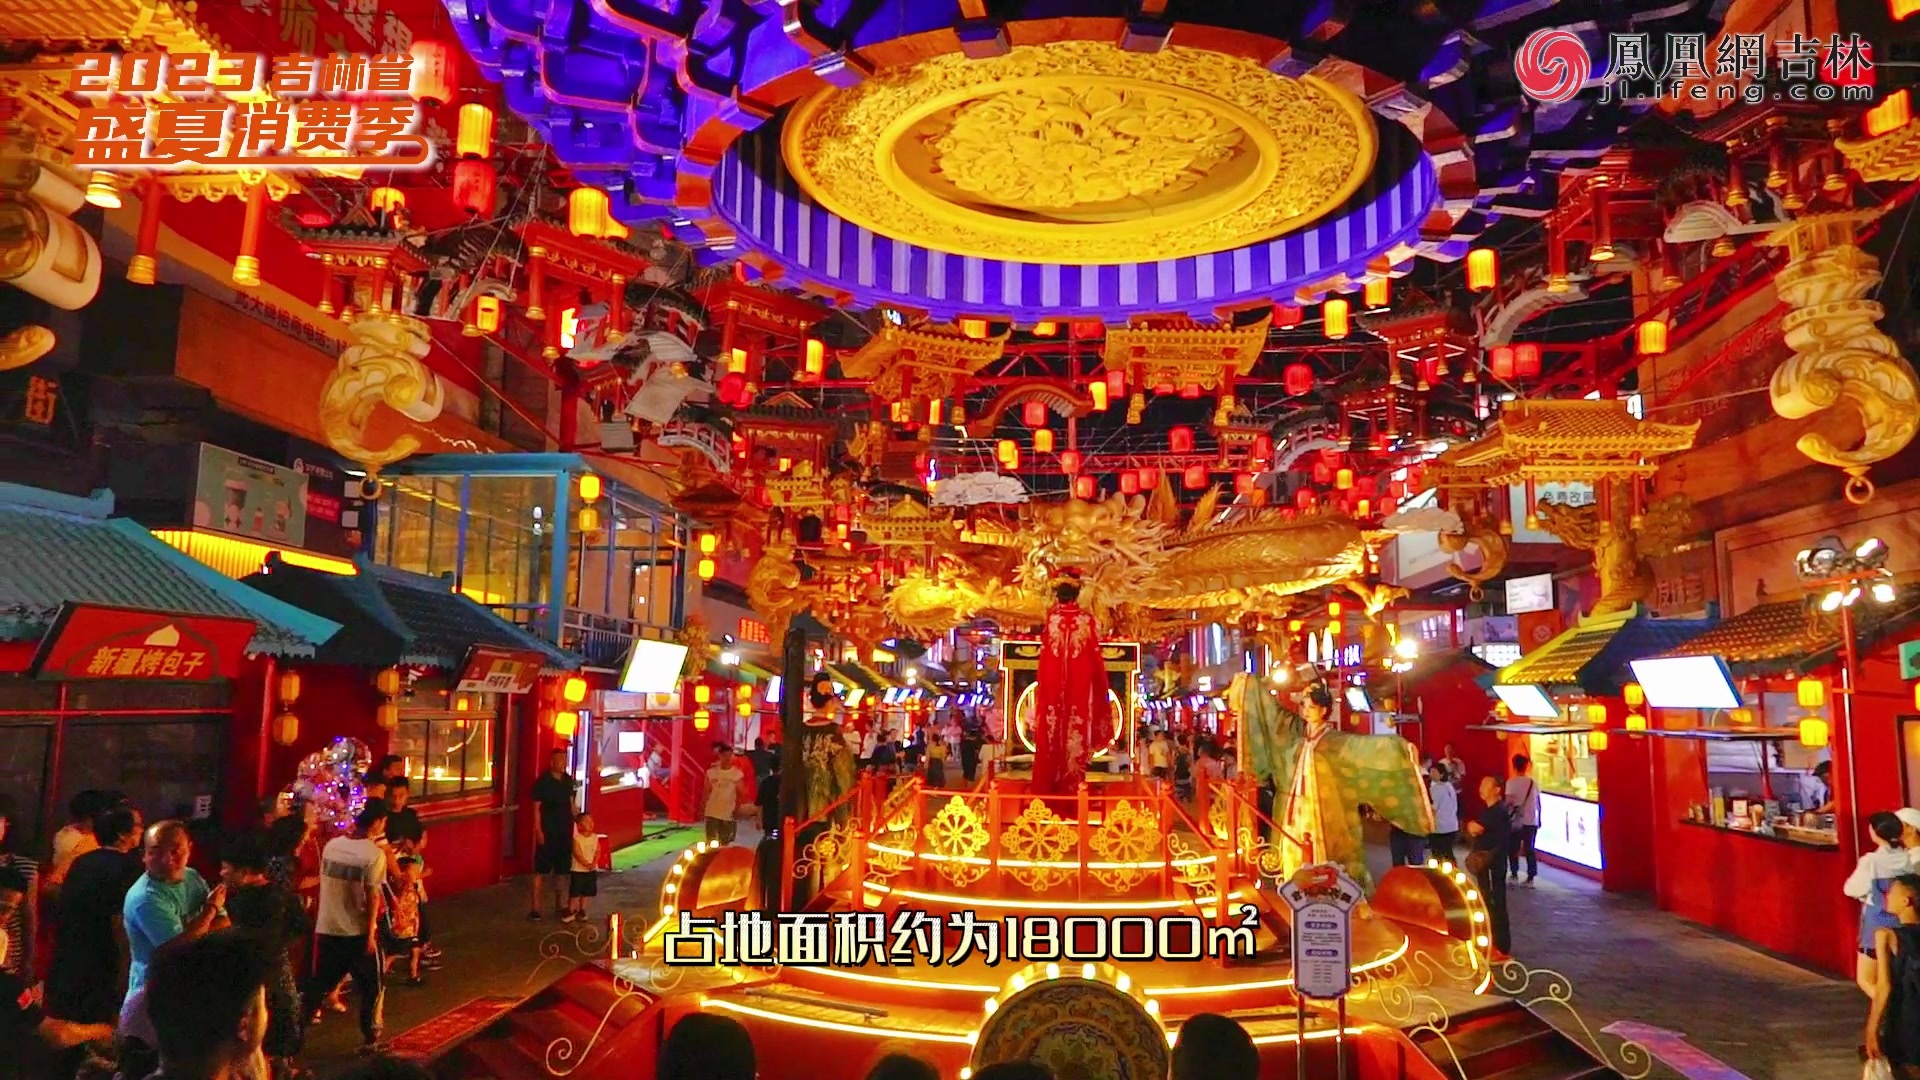 2023吉林省盛夏消费季|特色商业街、美食餐饮、休闲娱乐......全力开启四平美丽盛夏